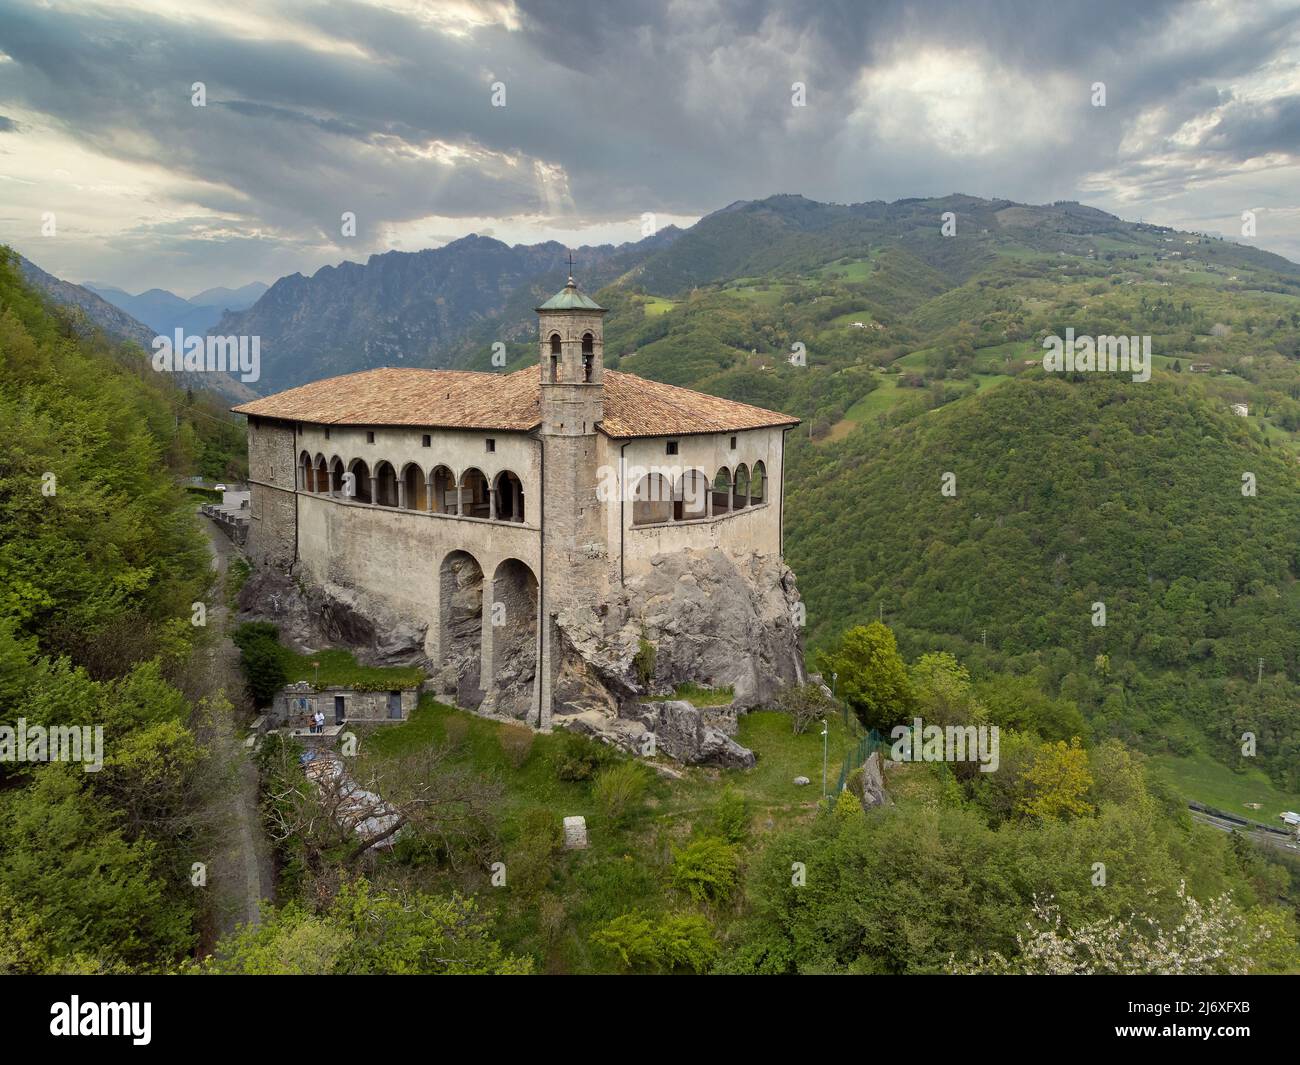 Luftpanorama von der Drohne des Sanctuary of St. Patrick (San Patrizio) auf der steilen Klippe gebaut, Colzate, Bergamo, Italien Stockfoto